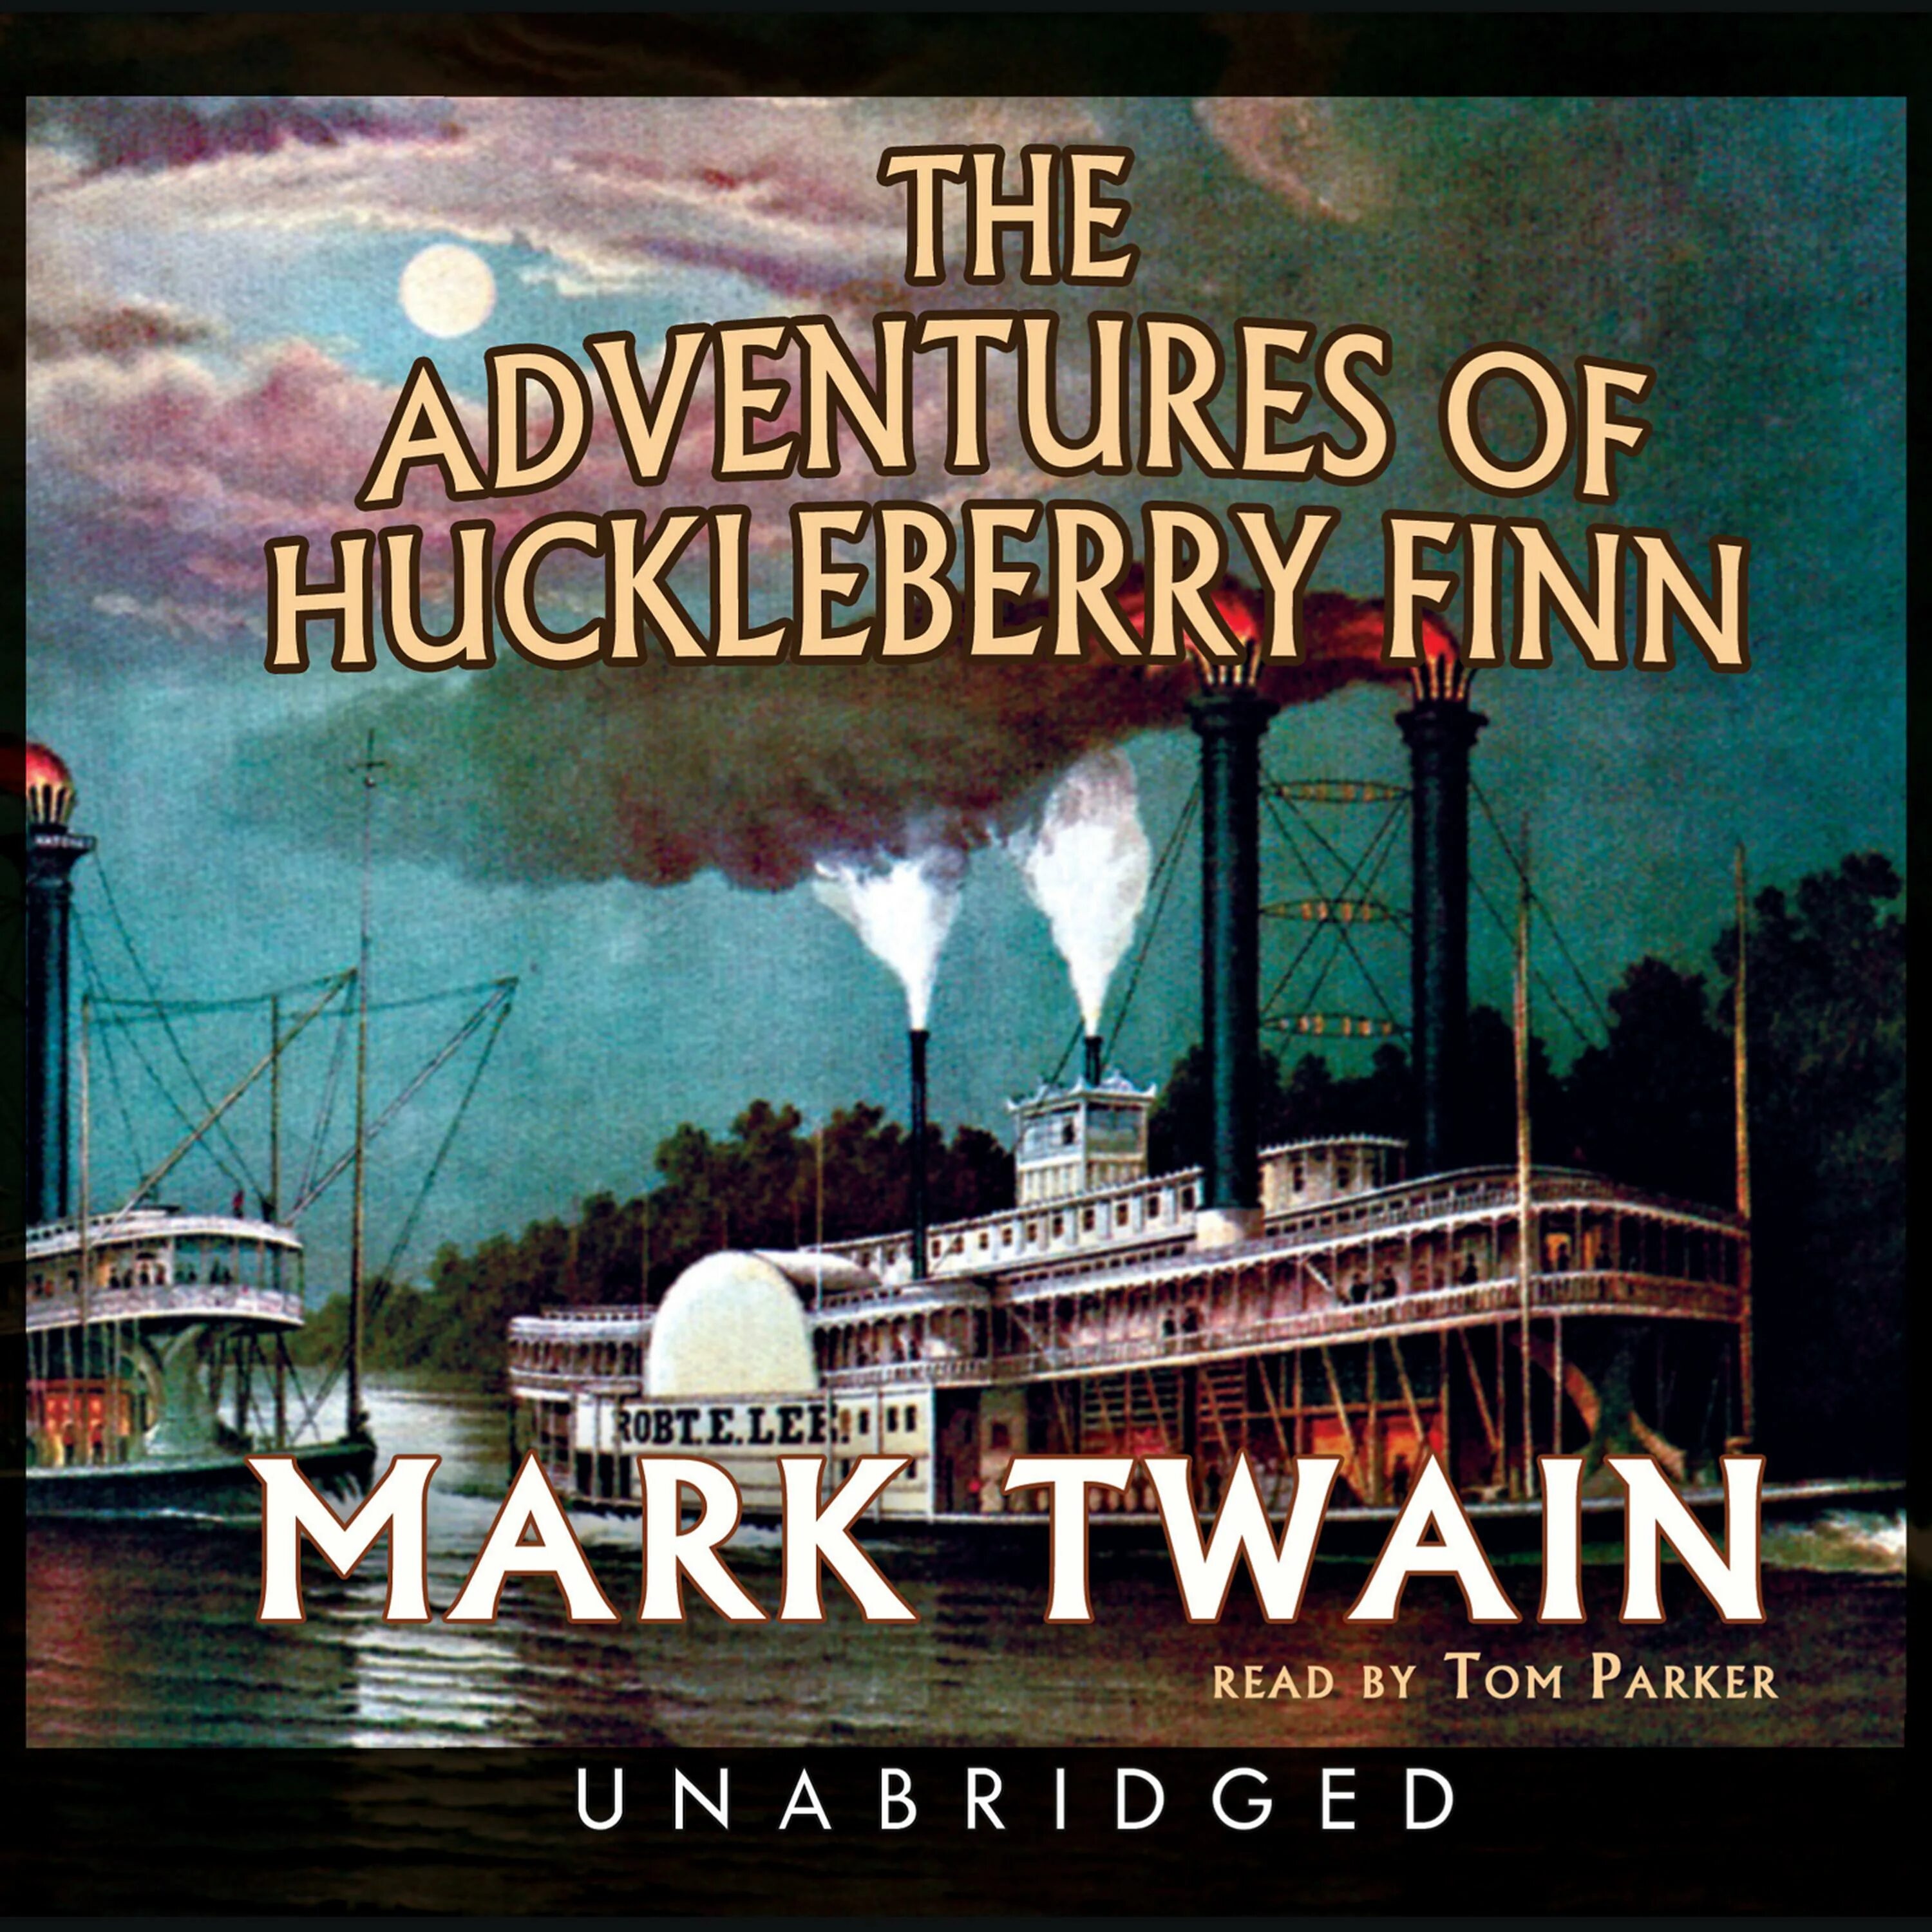 Adventures of Huckleberry Finn. Mark Twain Finn. The Adventures of Huckleberry Finn by Mark Twain. Dventures of Huckleberry Finn.